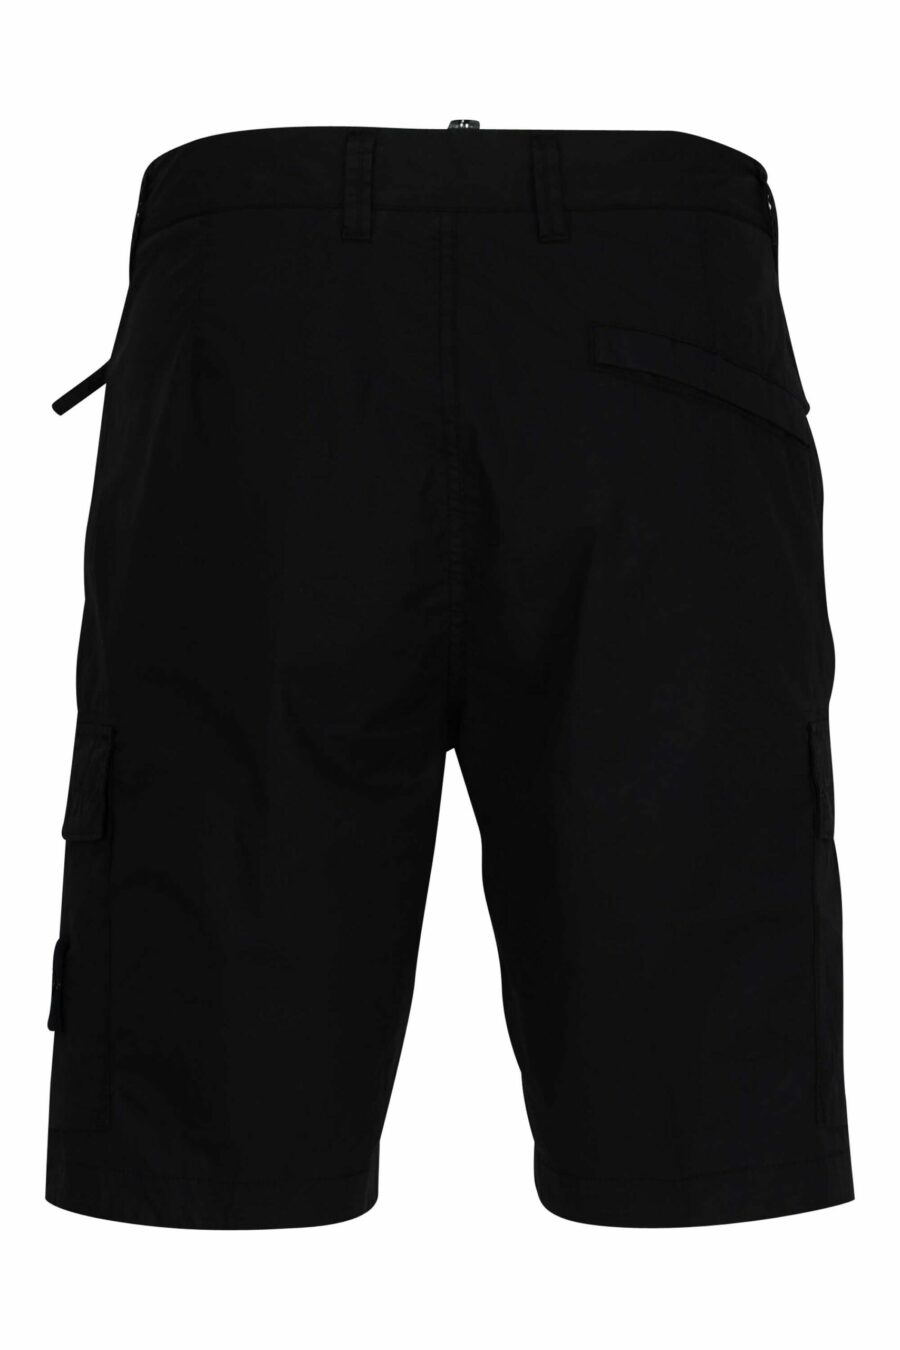 Pantalón corto negro estilo cargo con logo parche brújula - 8052572851193 2 scaled